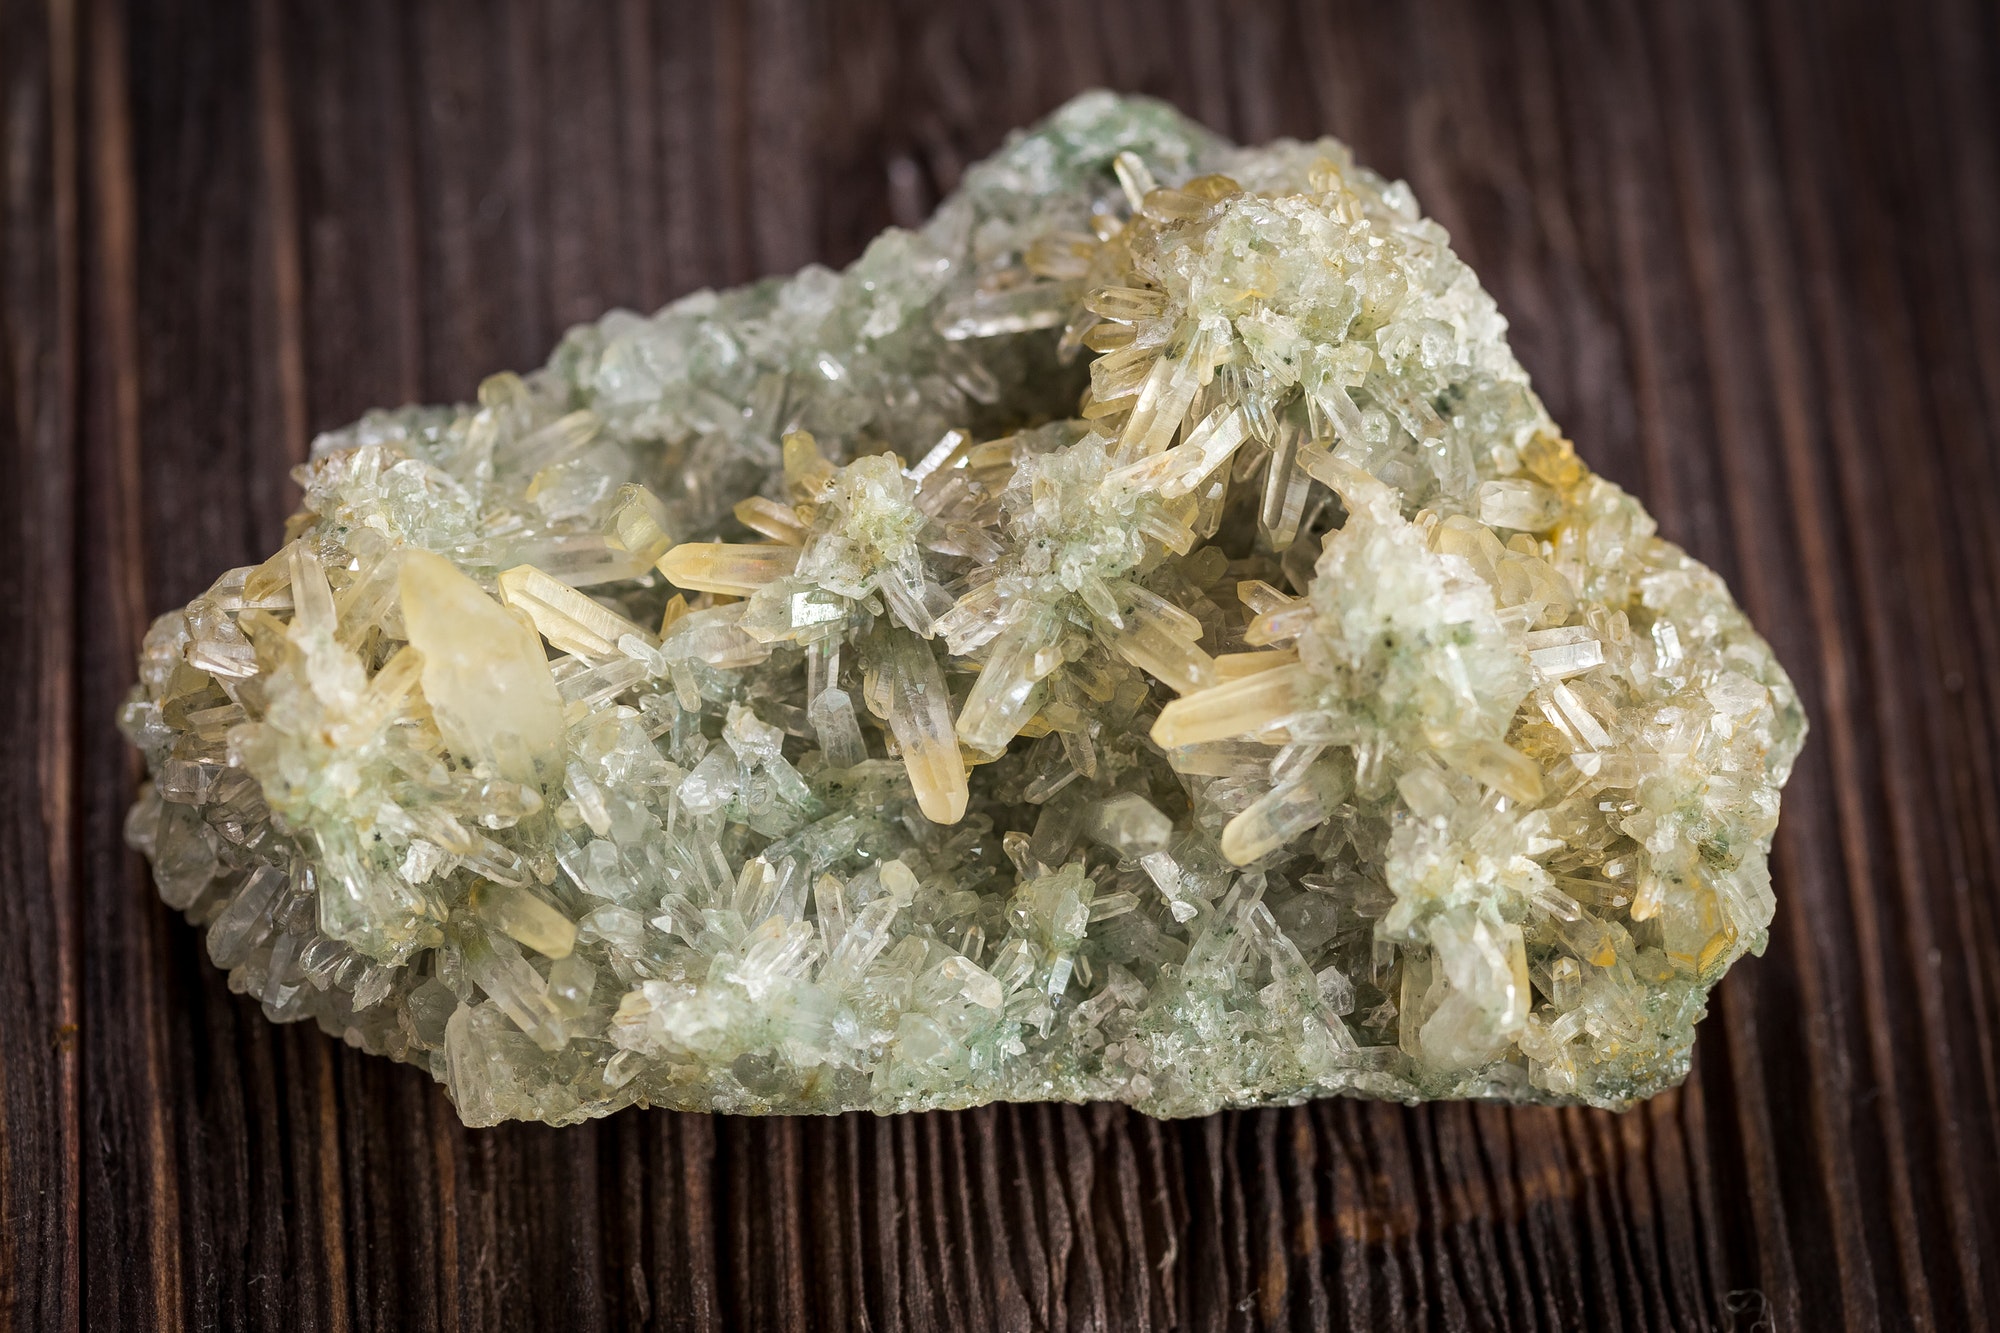 Crystals of quartz